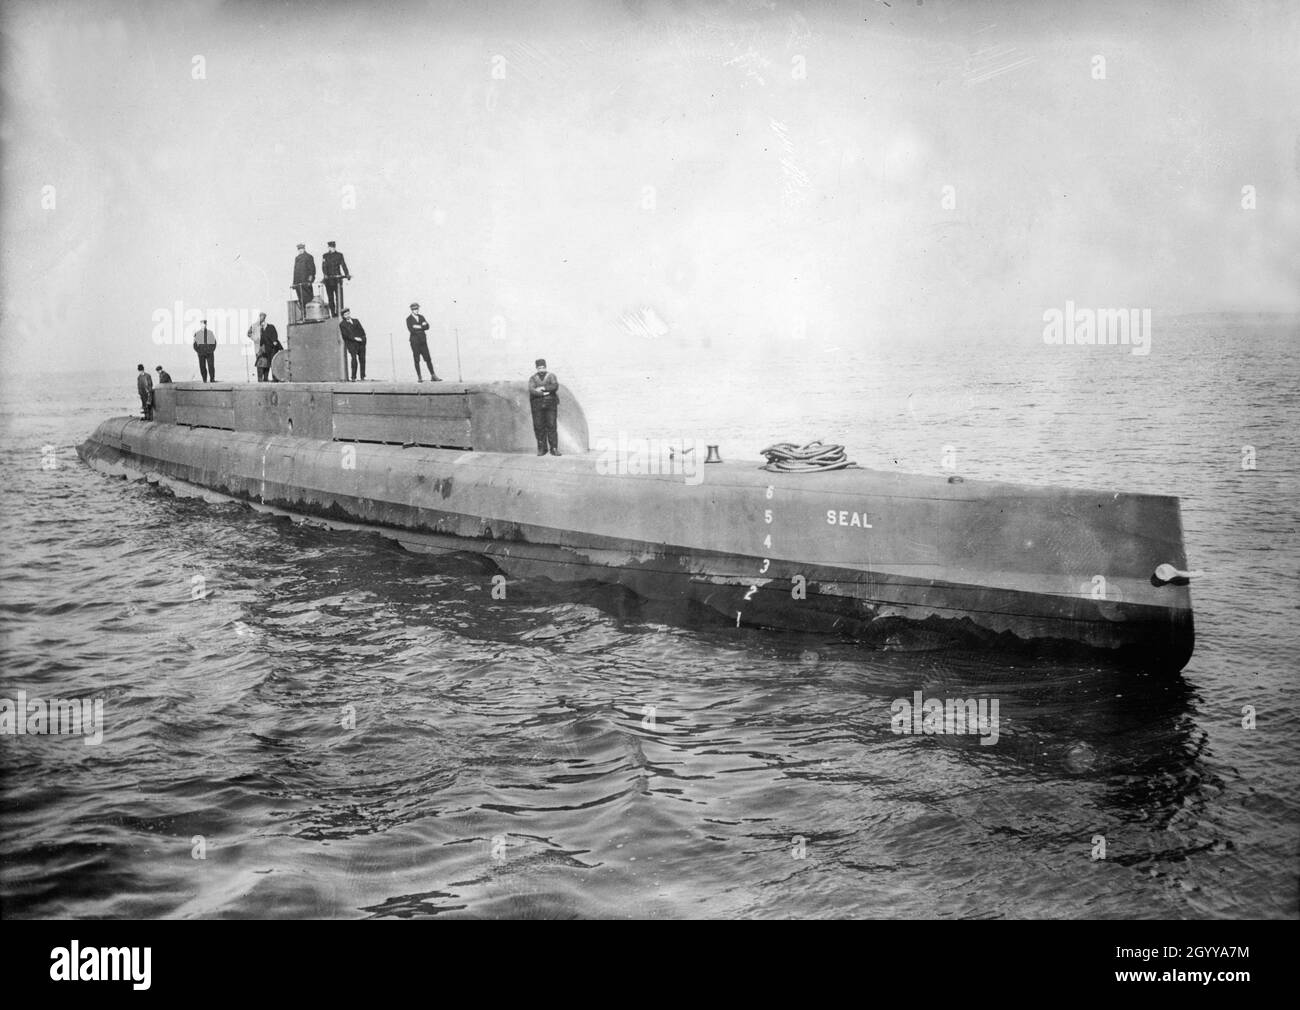 Une photo vintage vers 1911 du sous-marin USS Seal G-1 (SS-19½) lancé le 8 février 1911 conçu par l'ingénieur Simon Lake et construit par la Newport News Shipbuilding Company.Elle a été utilisée comme cible après la décomposition et a coulé le 21 juin 1921 Banque D'Images